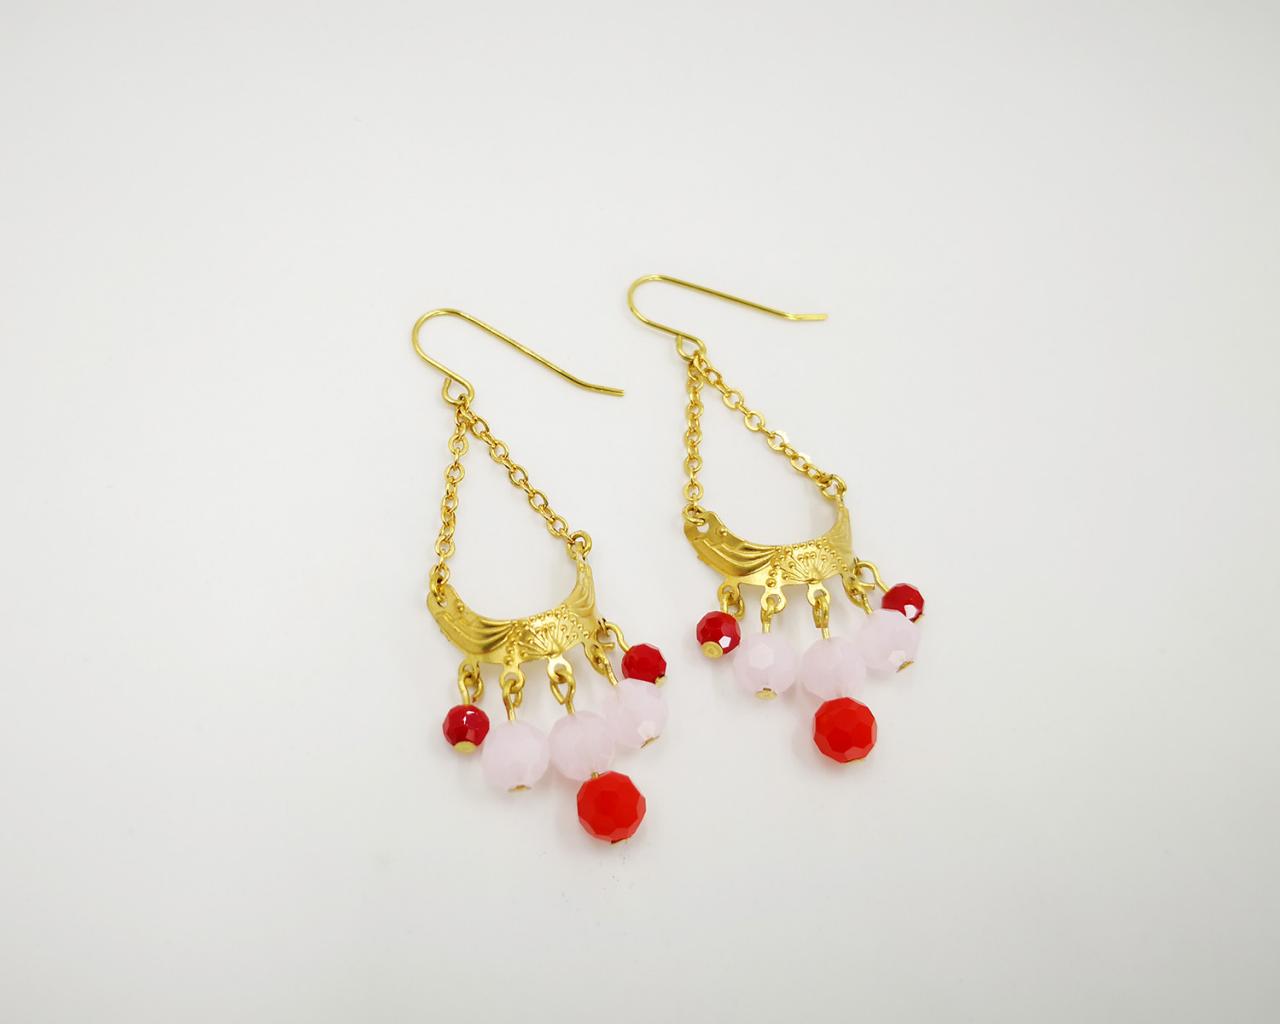 Fringe Earrings Chain Earrings Minimalist Earrings Beaded Earrings Boho Earrings Brass Earrings Pink Earrings Dangle Earrings